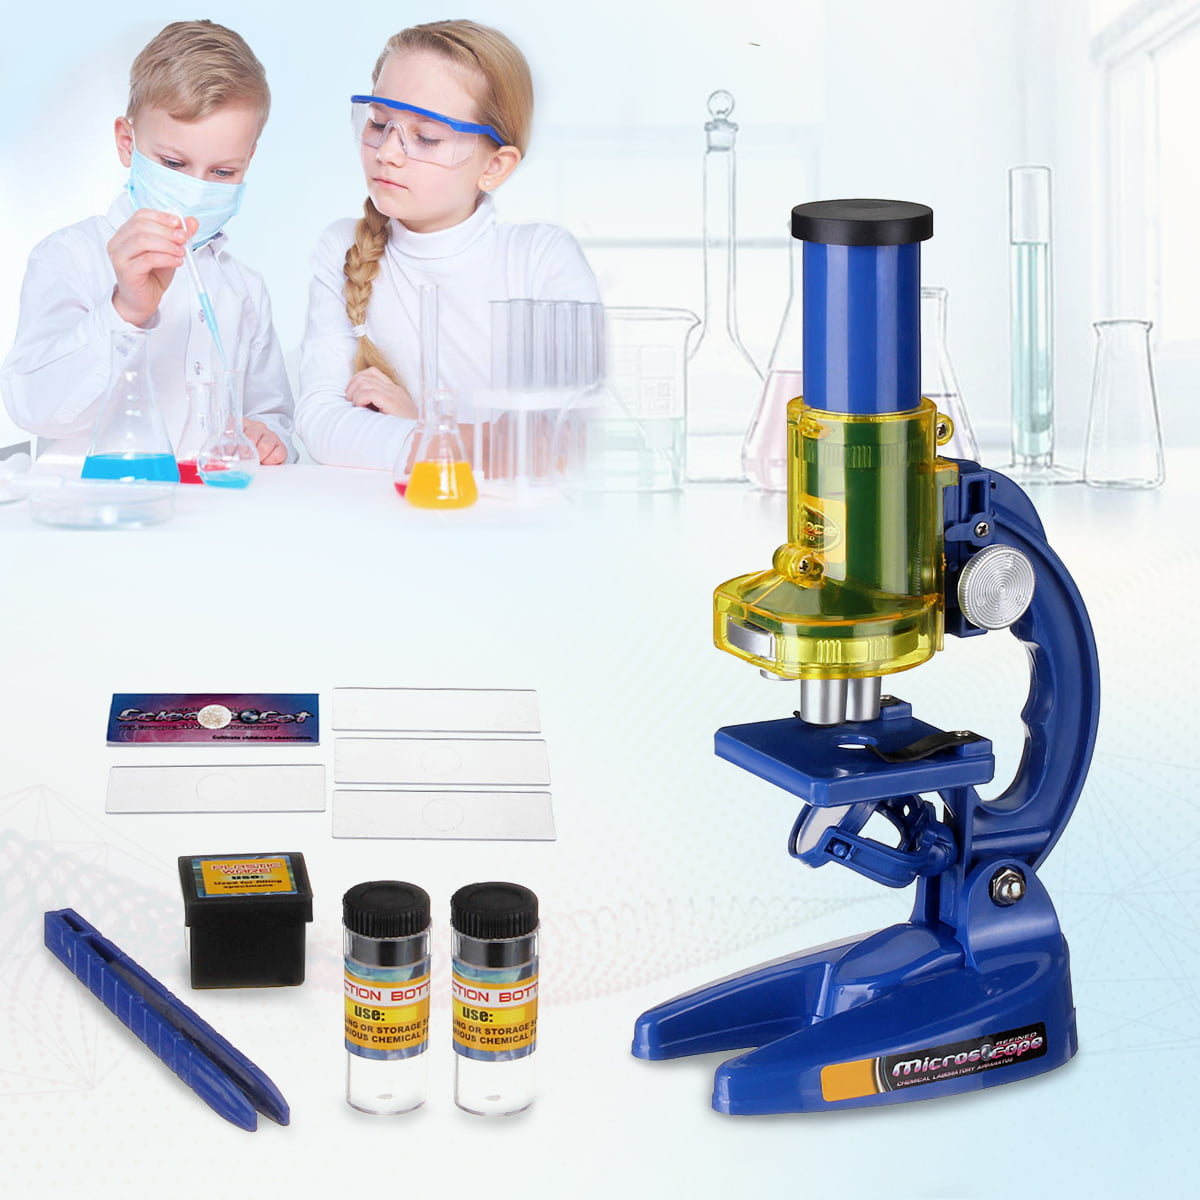 Educational Toys For Kids Microscope Kit Science Chemistry Lab Set Beginner Gift 